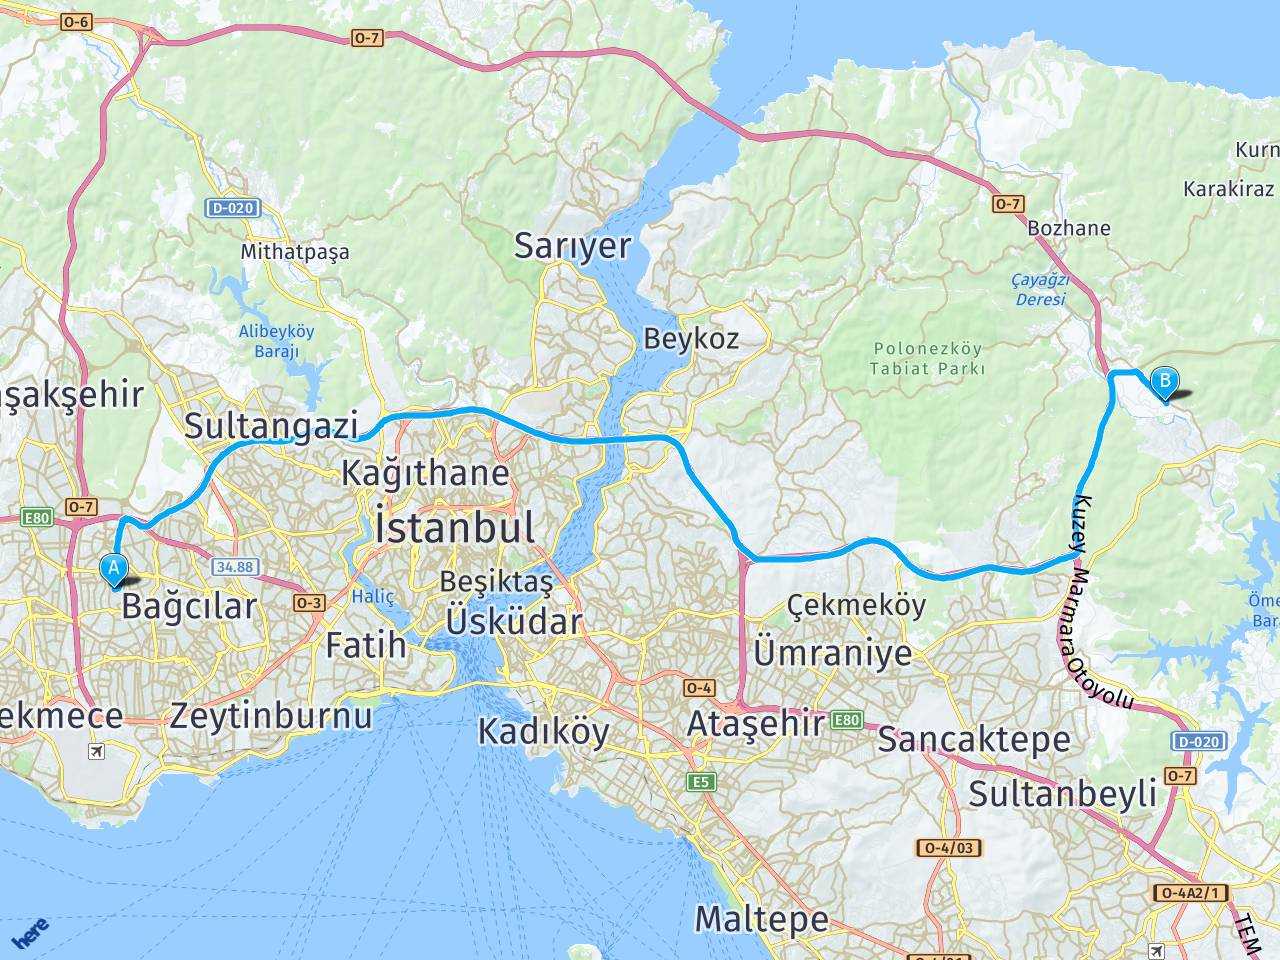 istanbul gunesli istanbul cekmekoy arasi mesafe istanbul gunesli istanbul cekmekoy yol haritasi istanbul gunesli istanbul cekmekoy kac saat kac km